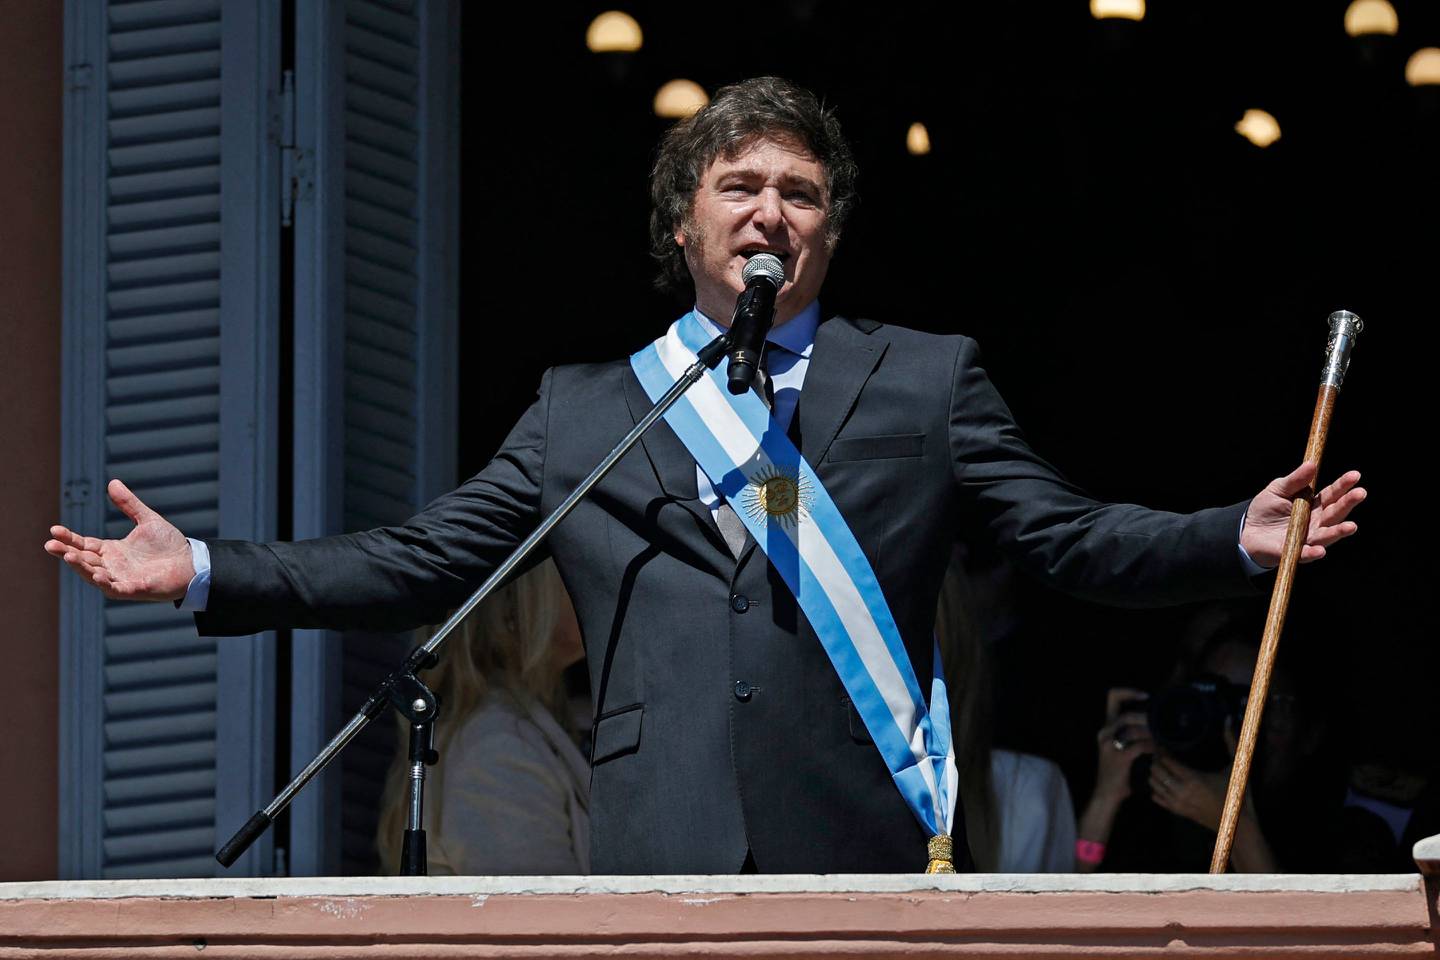 El economista libertario Javier Milei prestó juramento el domingo como presidente de Argentina, después de una contundente victoria electoral. alimentado por la furia por la crisis económica del país. (Foto de Emiliano LASALVIA/AFP)